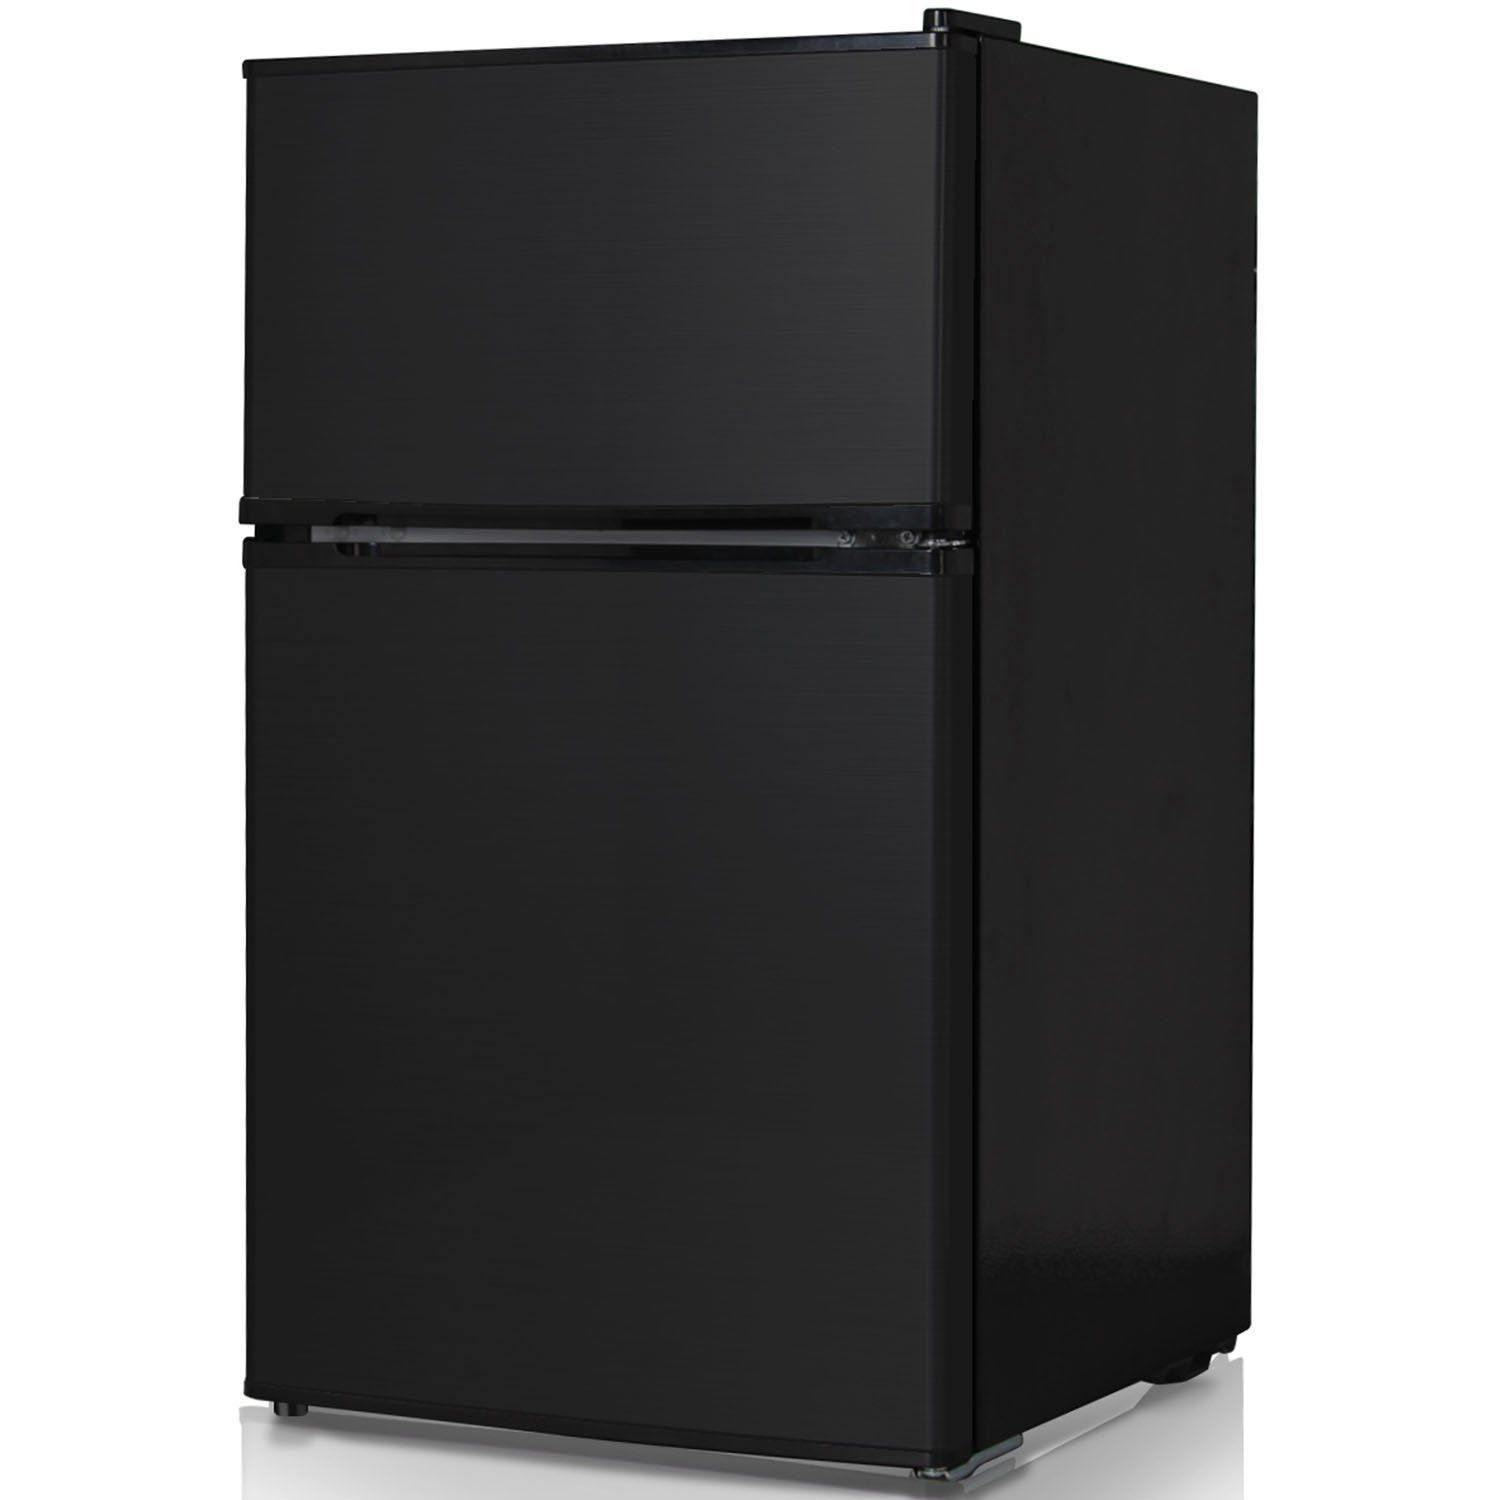 Keystone KSTRC312CB Compact 2-Door Refrigerator